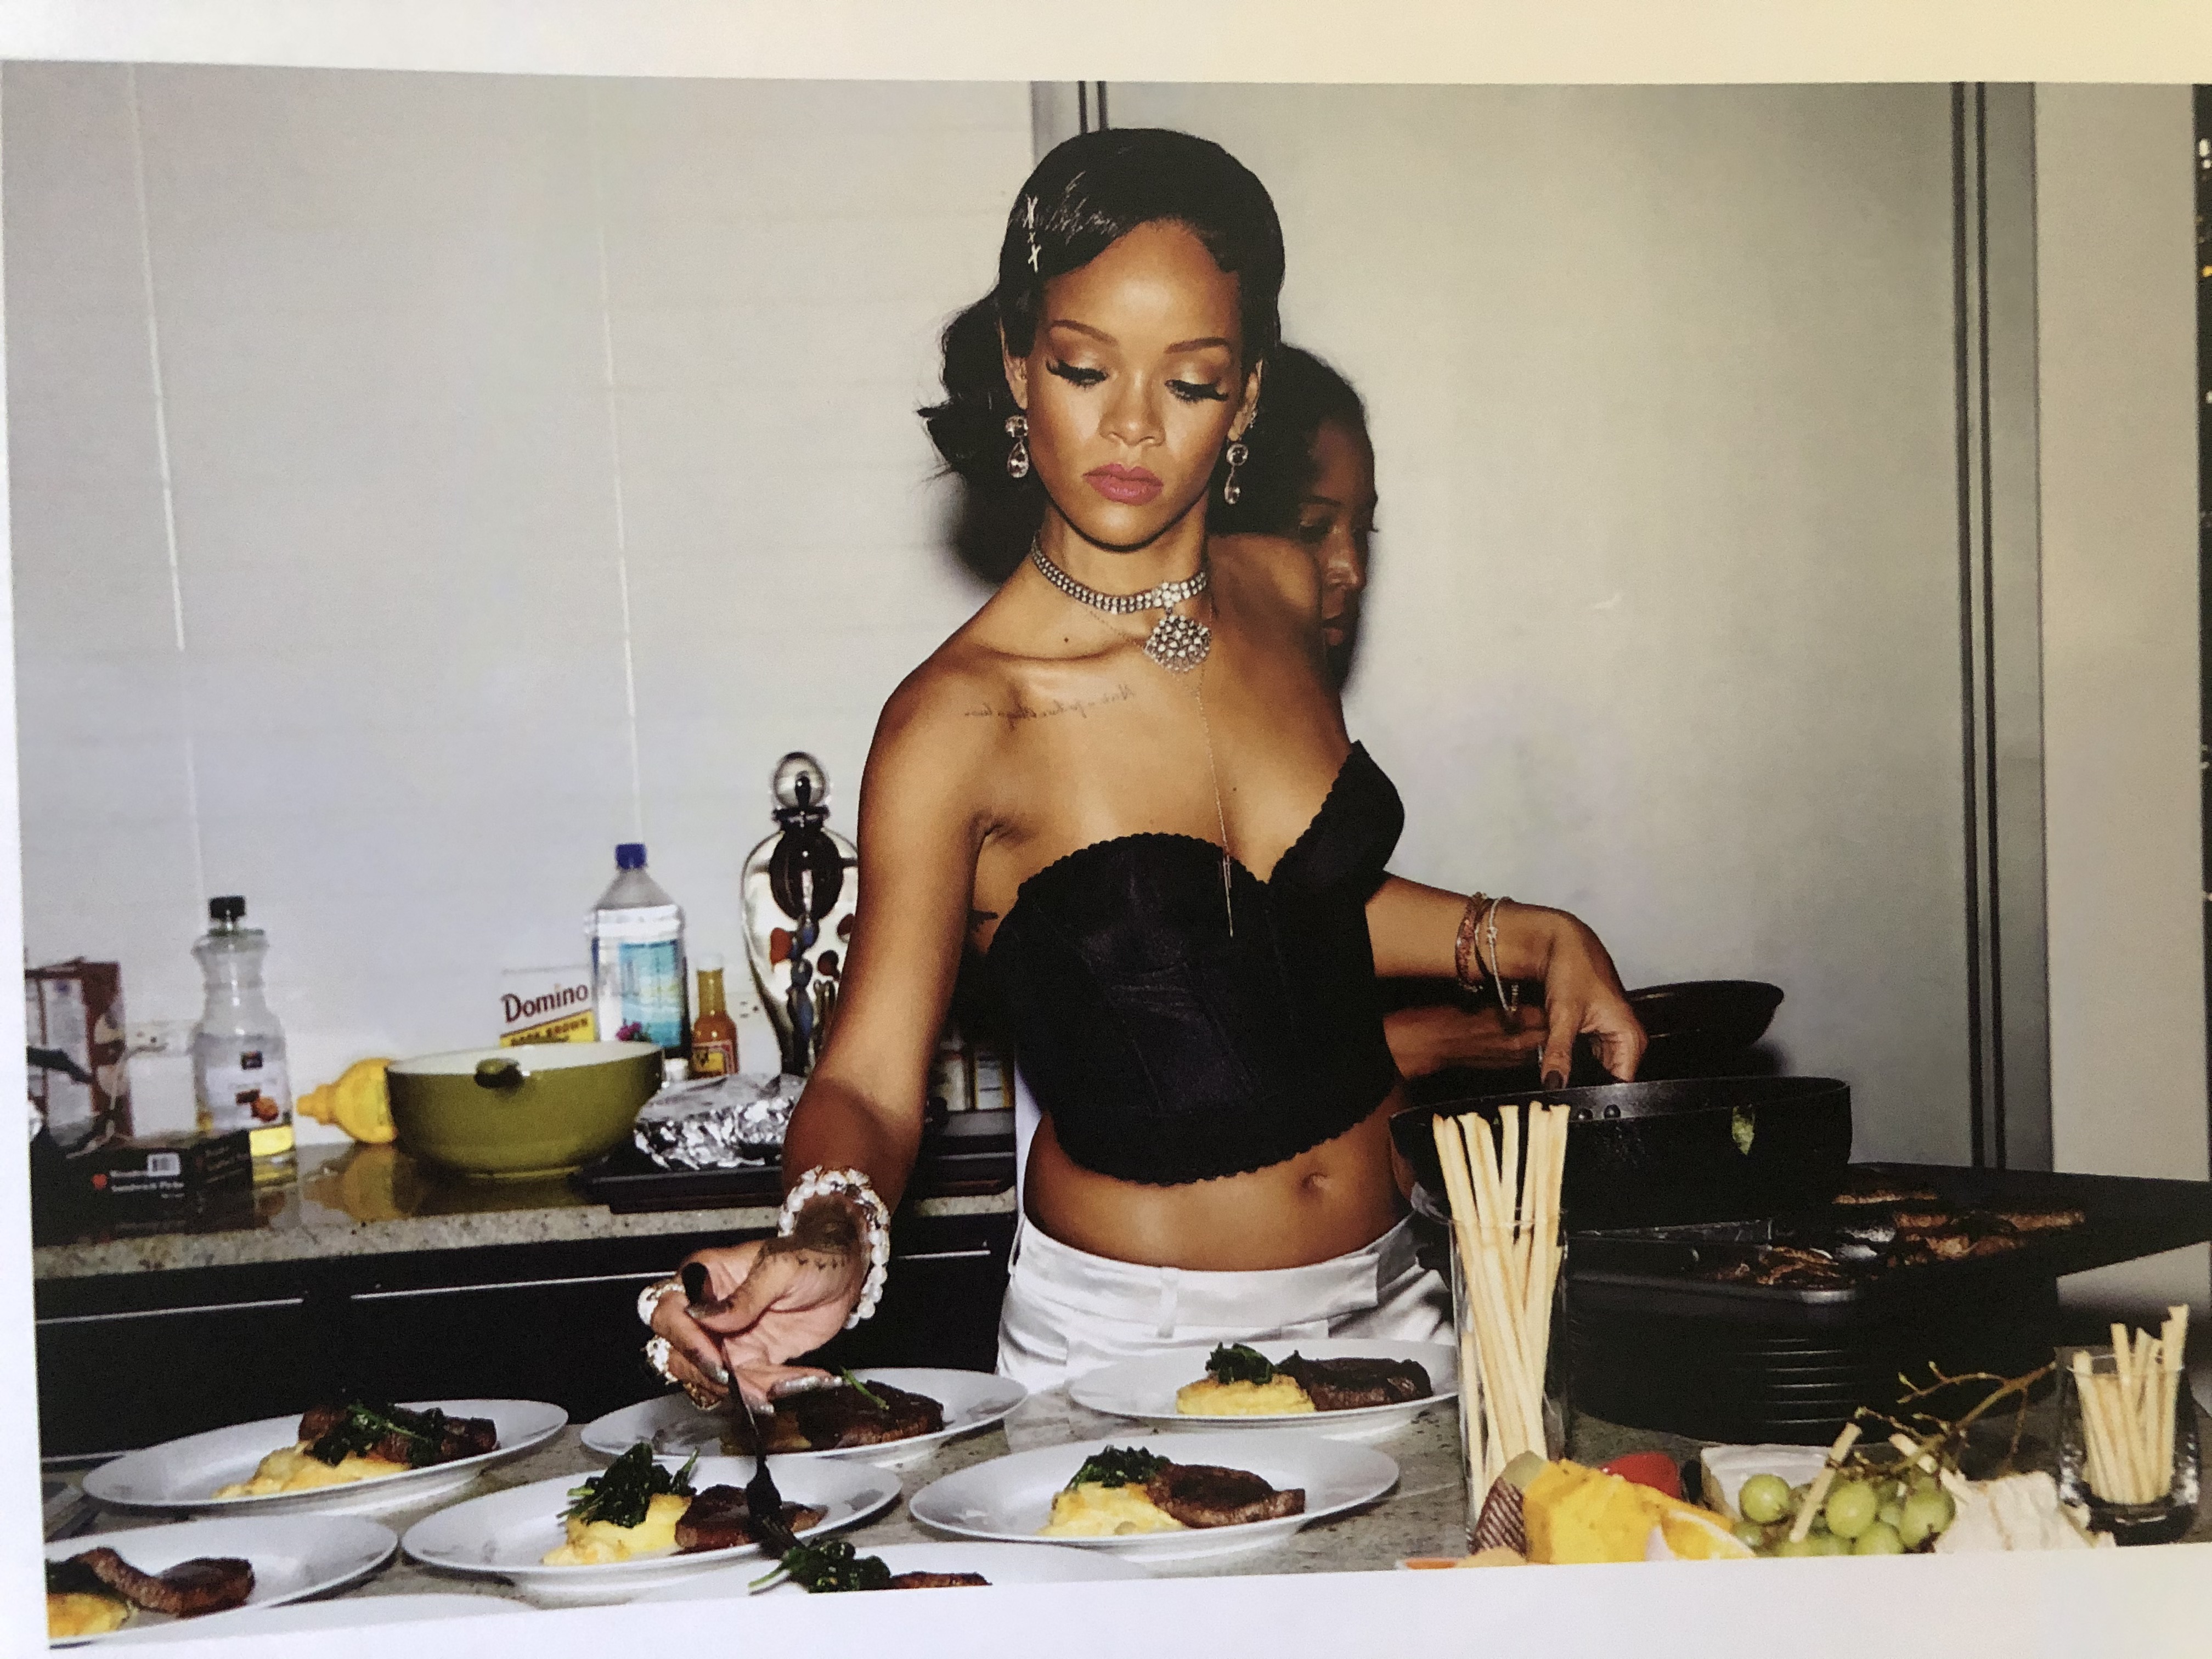 FOTOS Rihanna Lanz un libro! - Photo 18